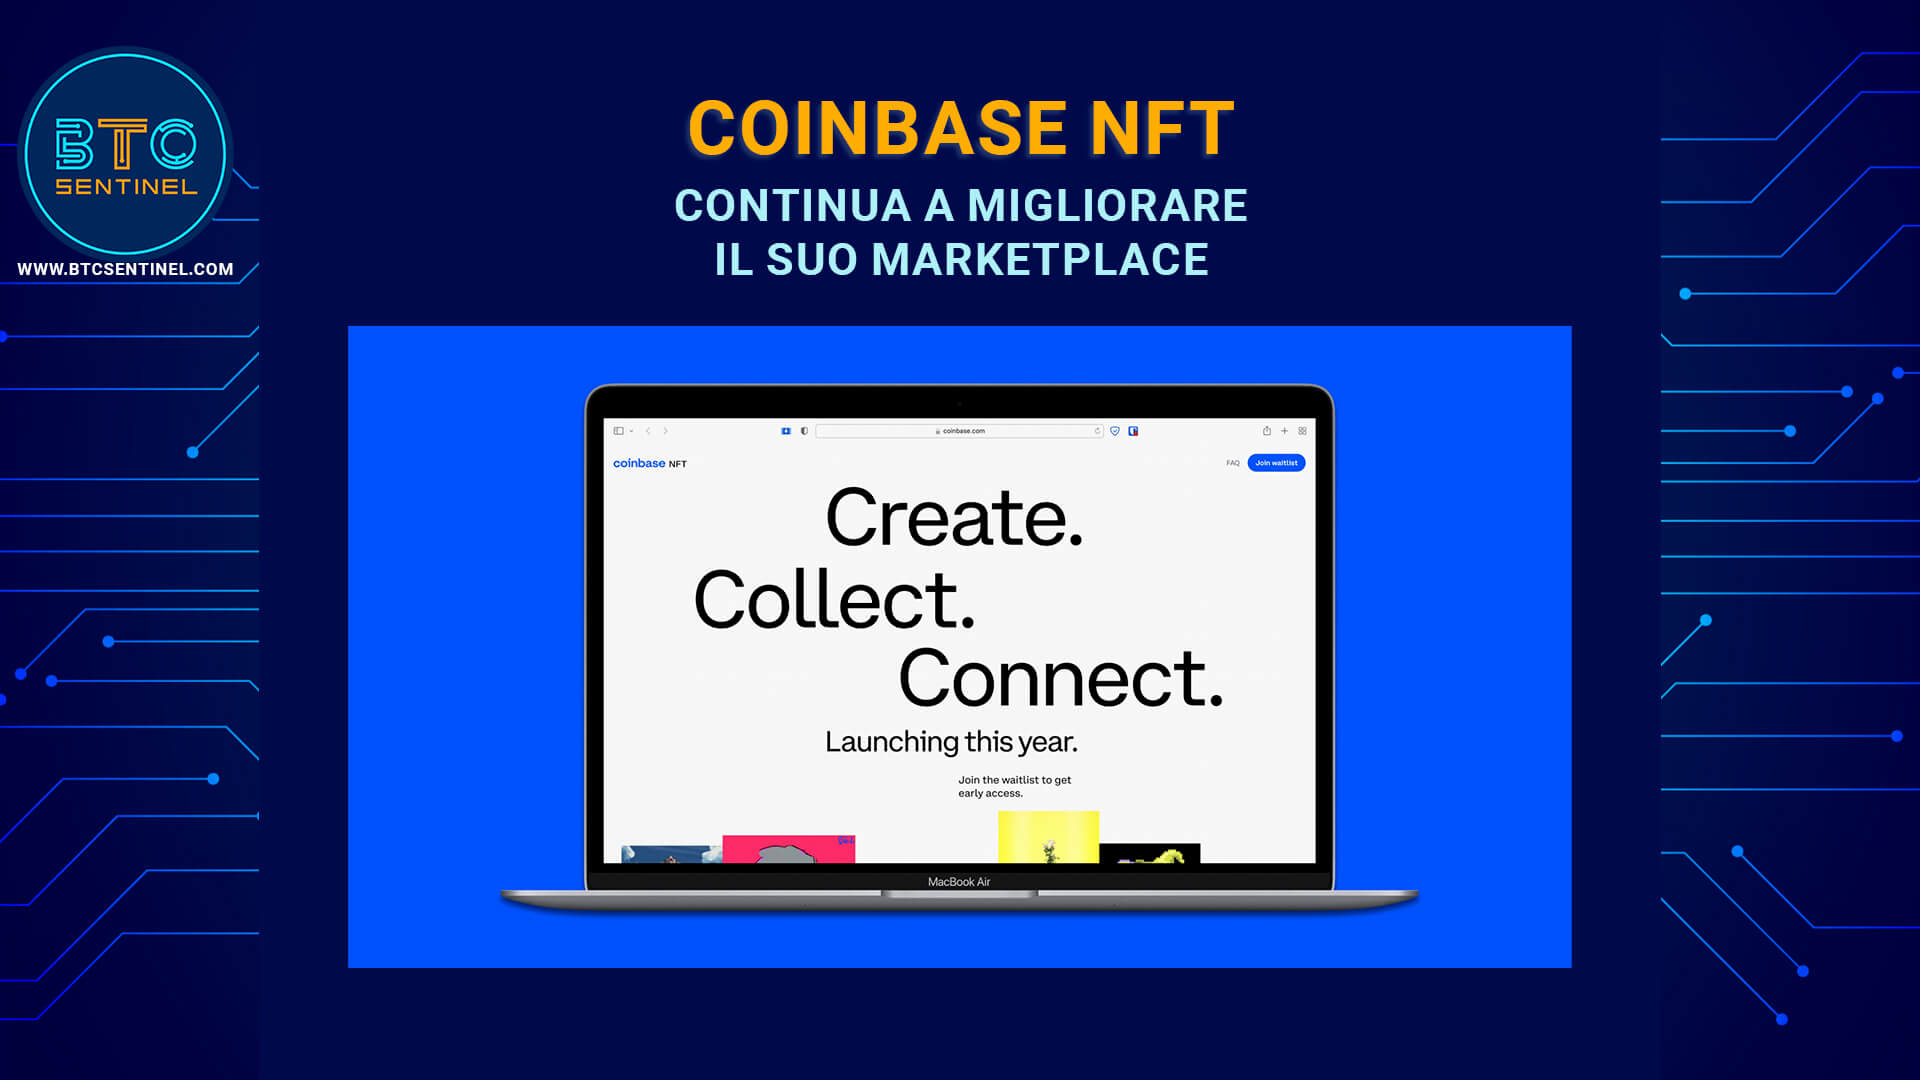 Coinbase NFT rilascia nuove funzionalità per attirare trader